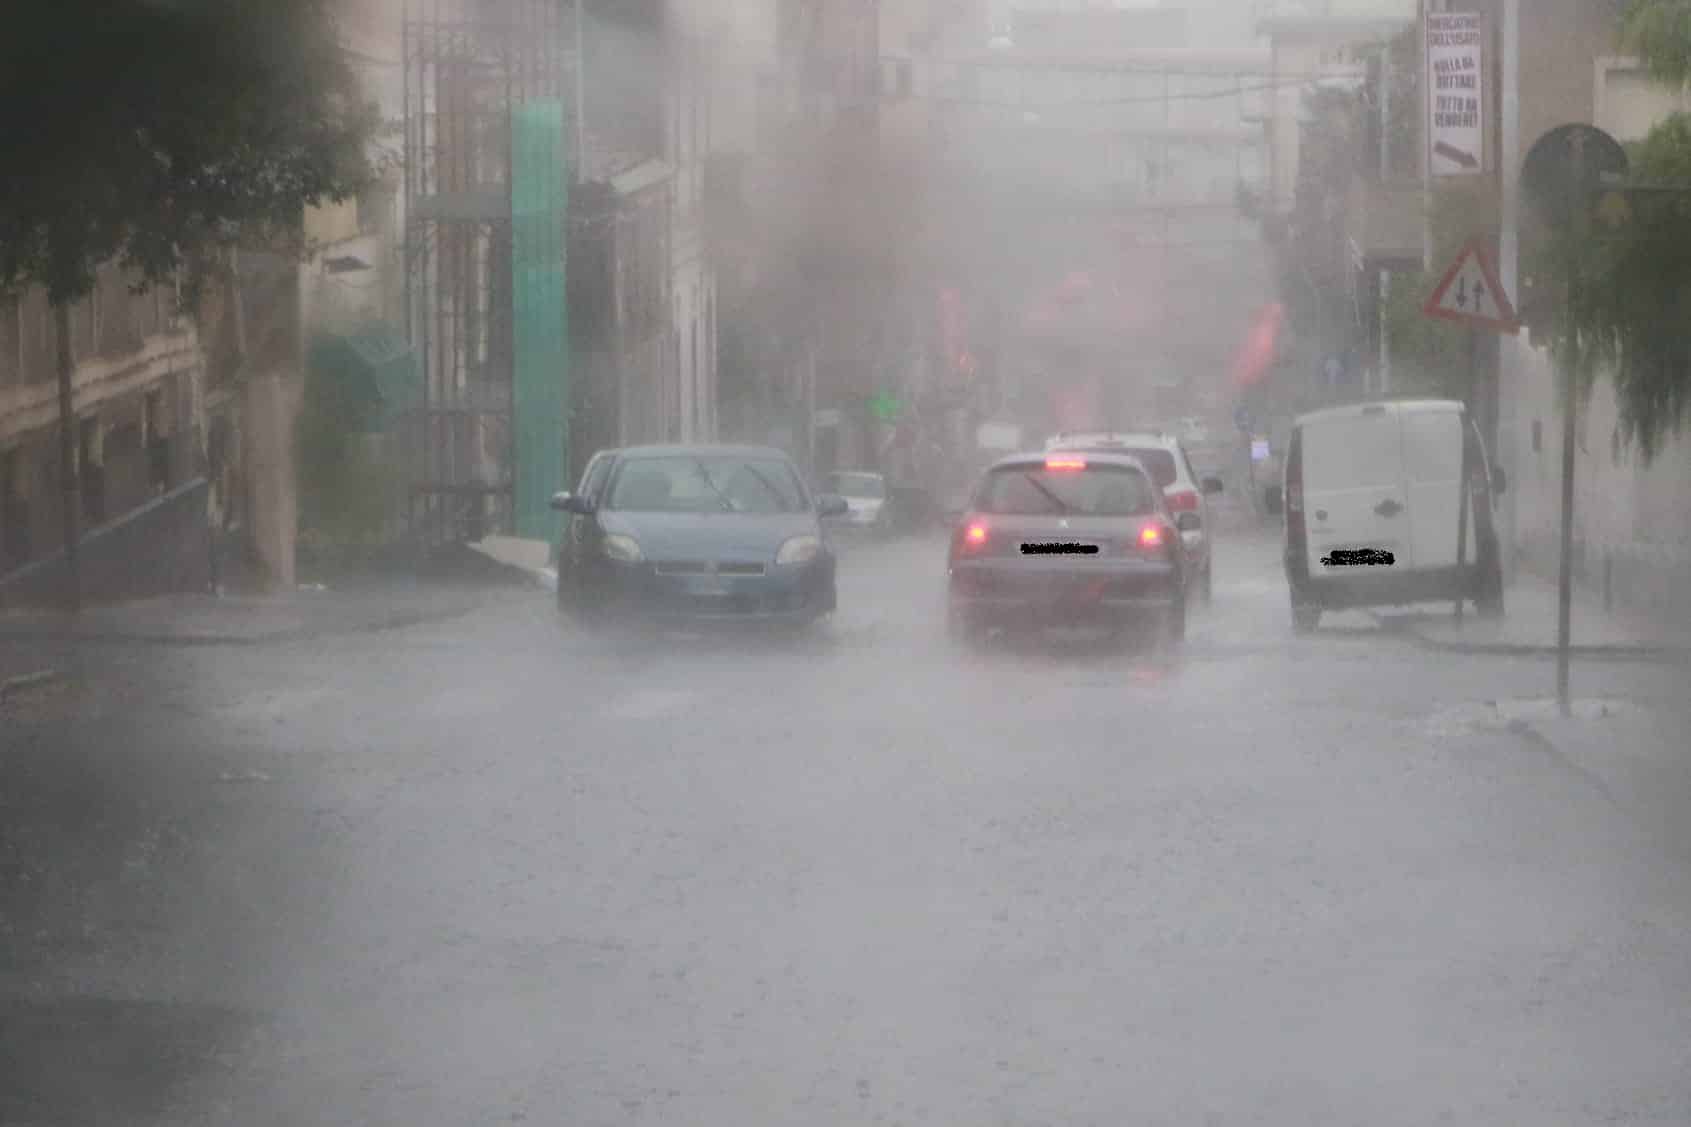 Maltempo, vittima a Gravina di Catania: uomo esce dall’auto, ma viene travolto dalla fiumana d’acqua